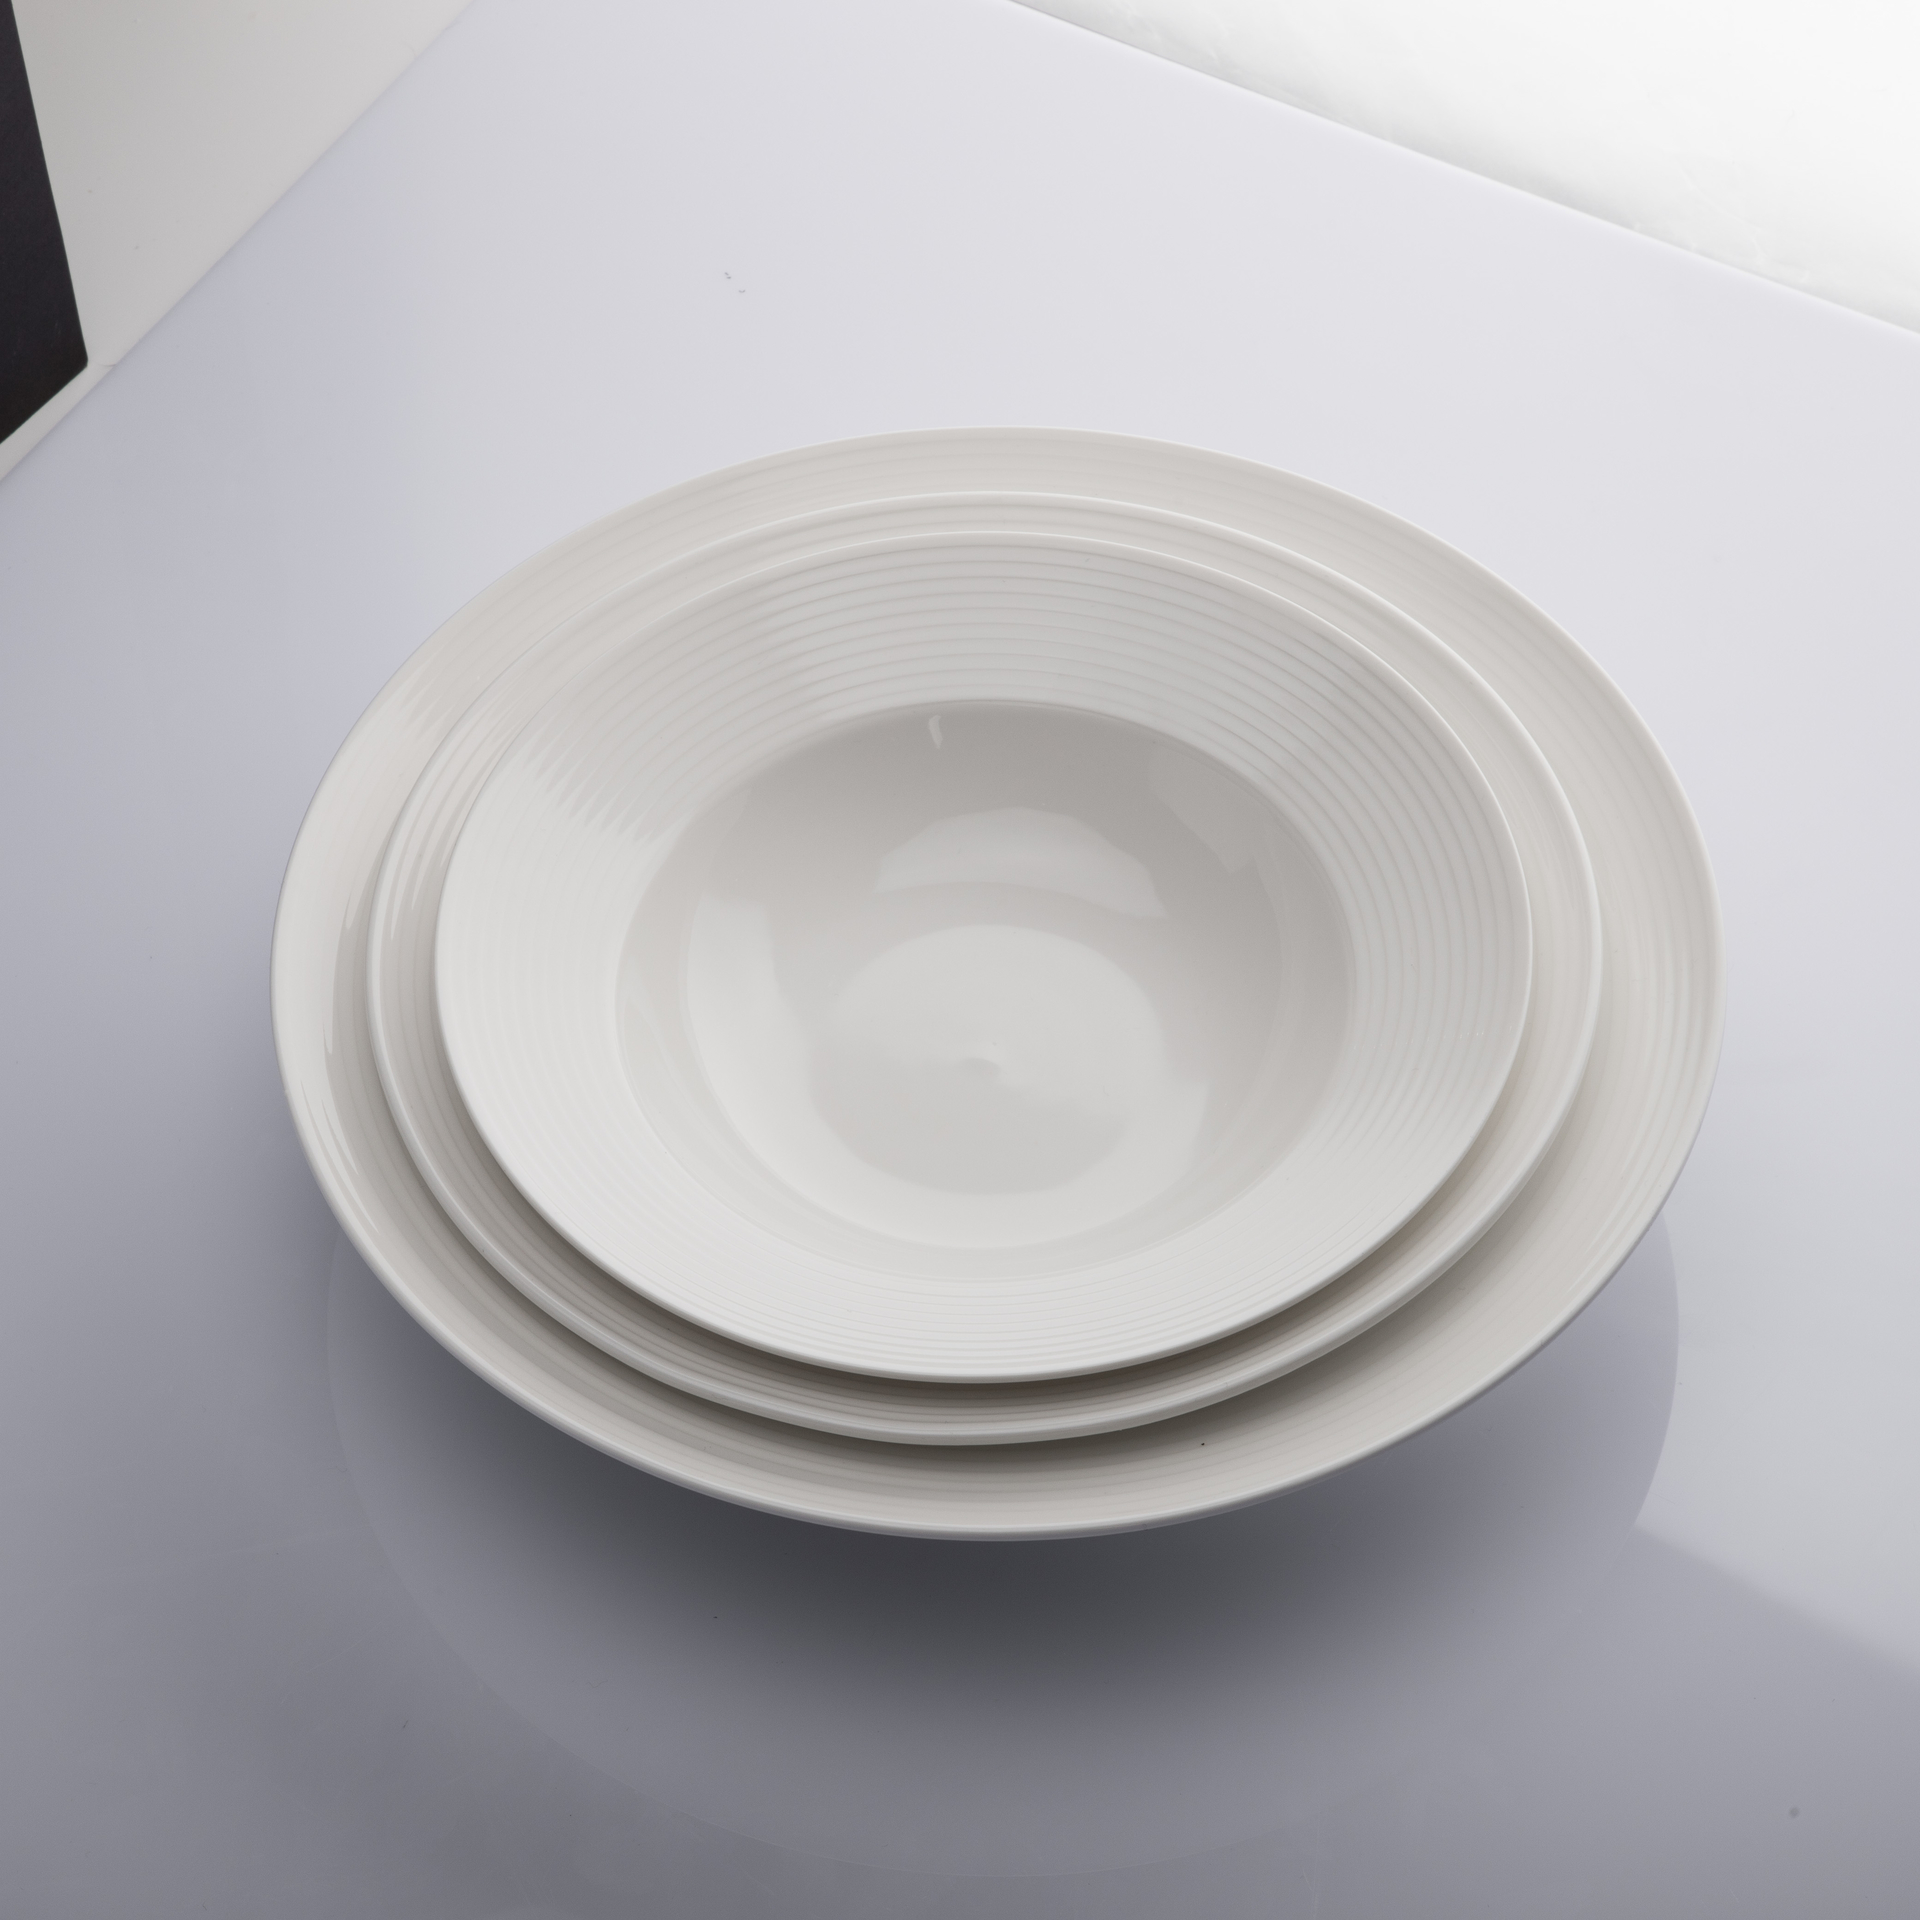 Five Star Hotel Restaurant Porcelain Deep Salad Bowl, Porcelain Tableware Bulk Supply Porcelain Restaurant Deep Plate